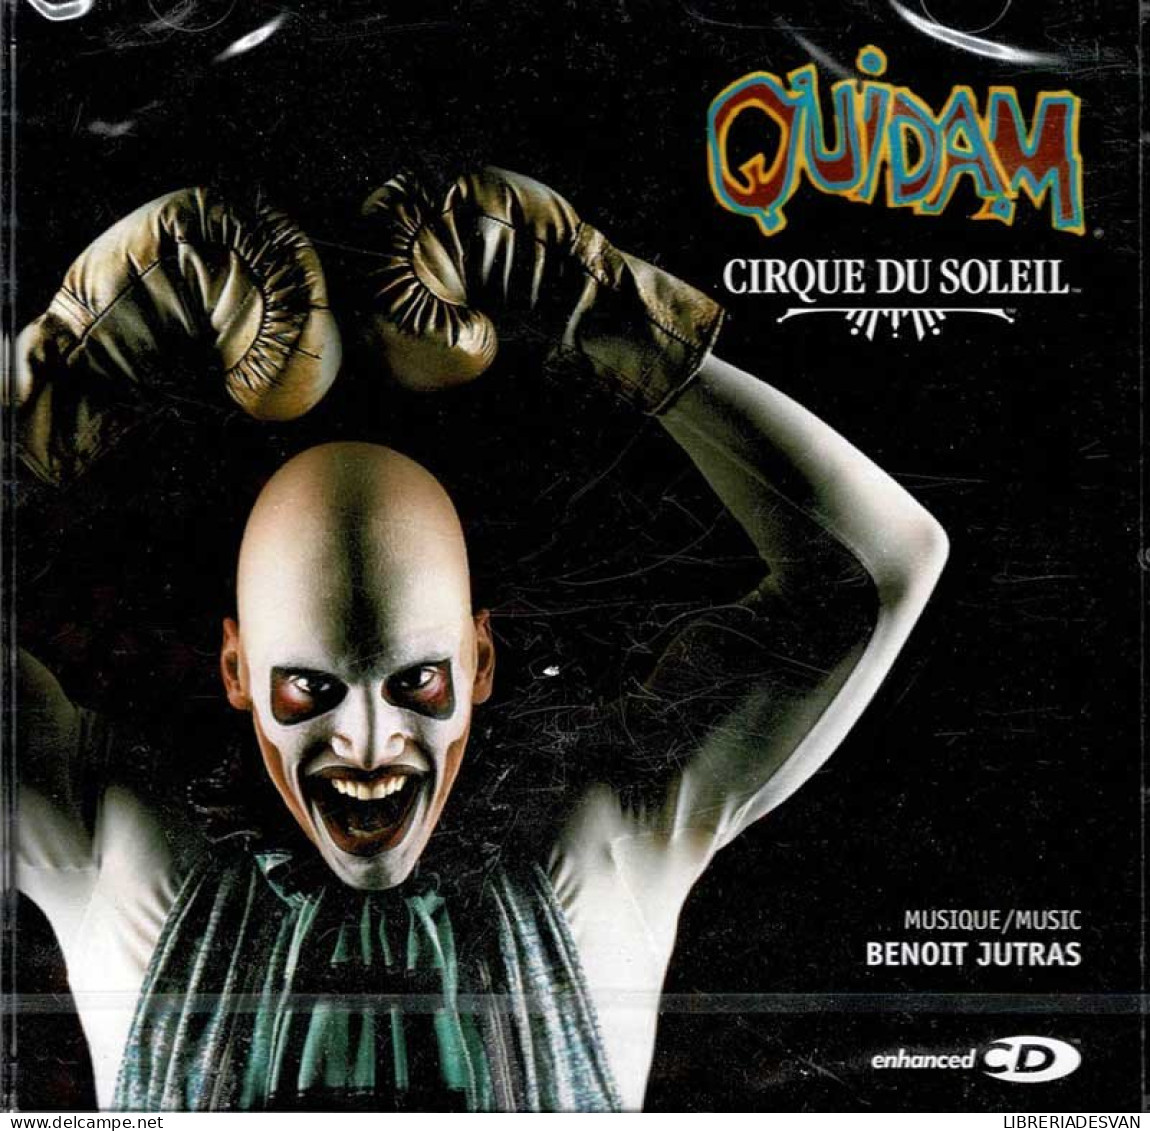 Cirque Du Soleil - Quidam. CD - Soundtracks, Film Music